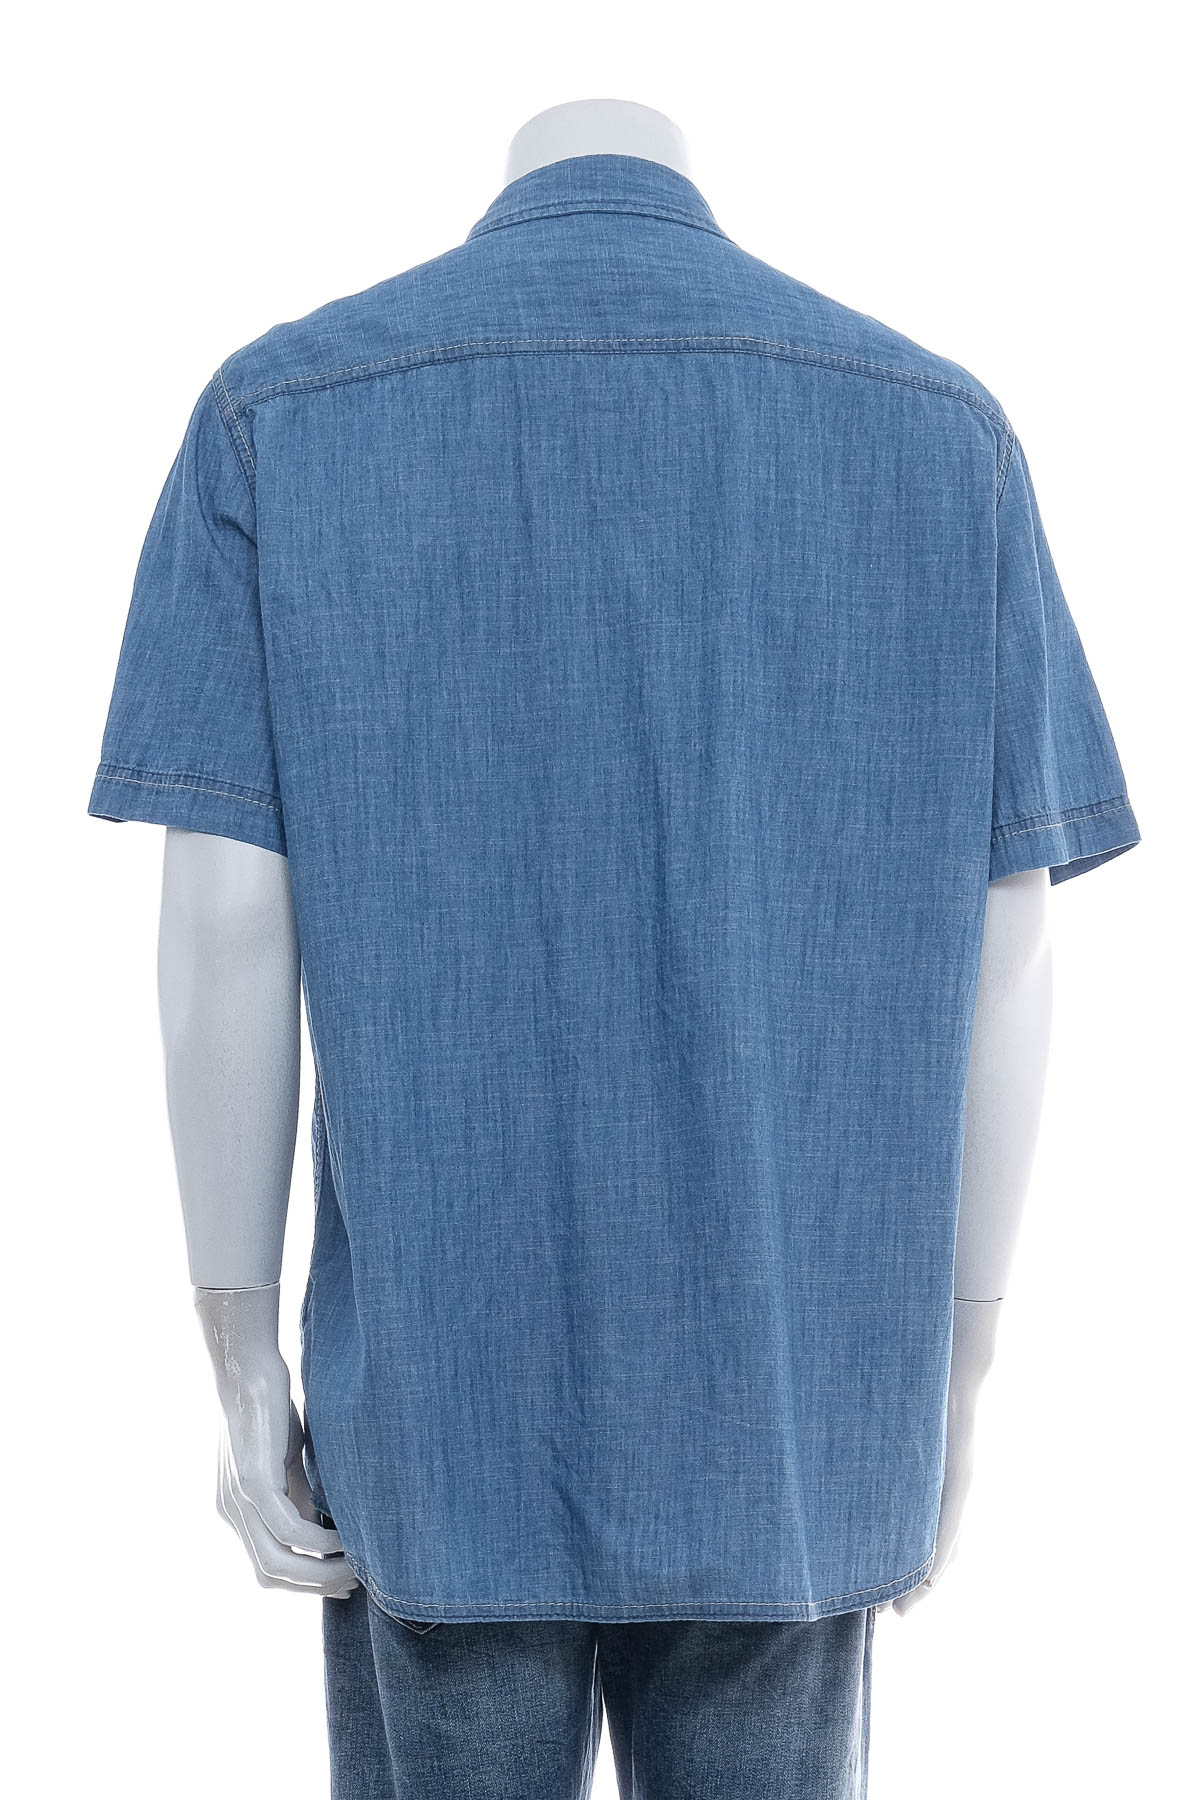 Ανδρικό τζίν πουκάμισο - John Baner - 1